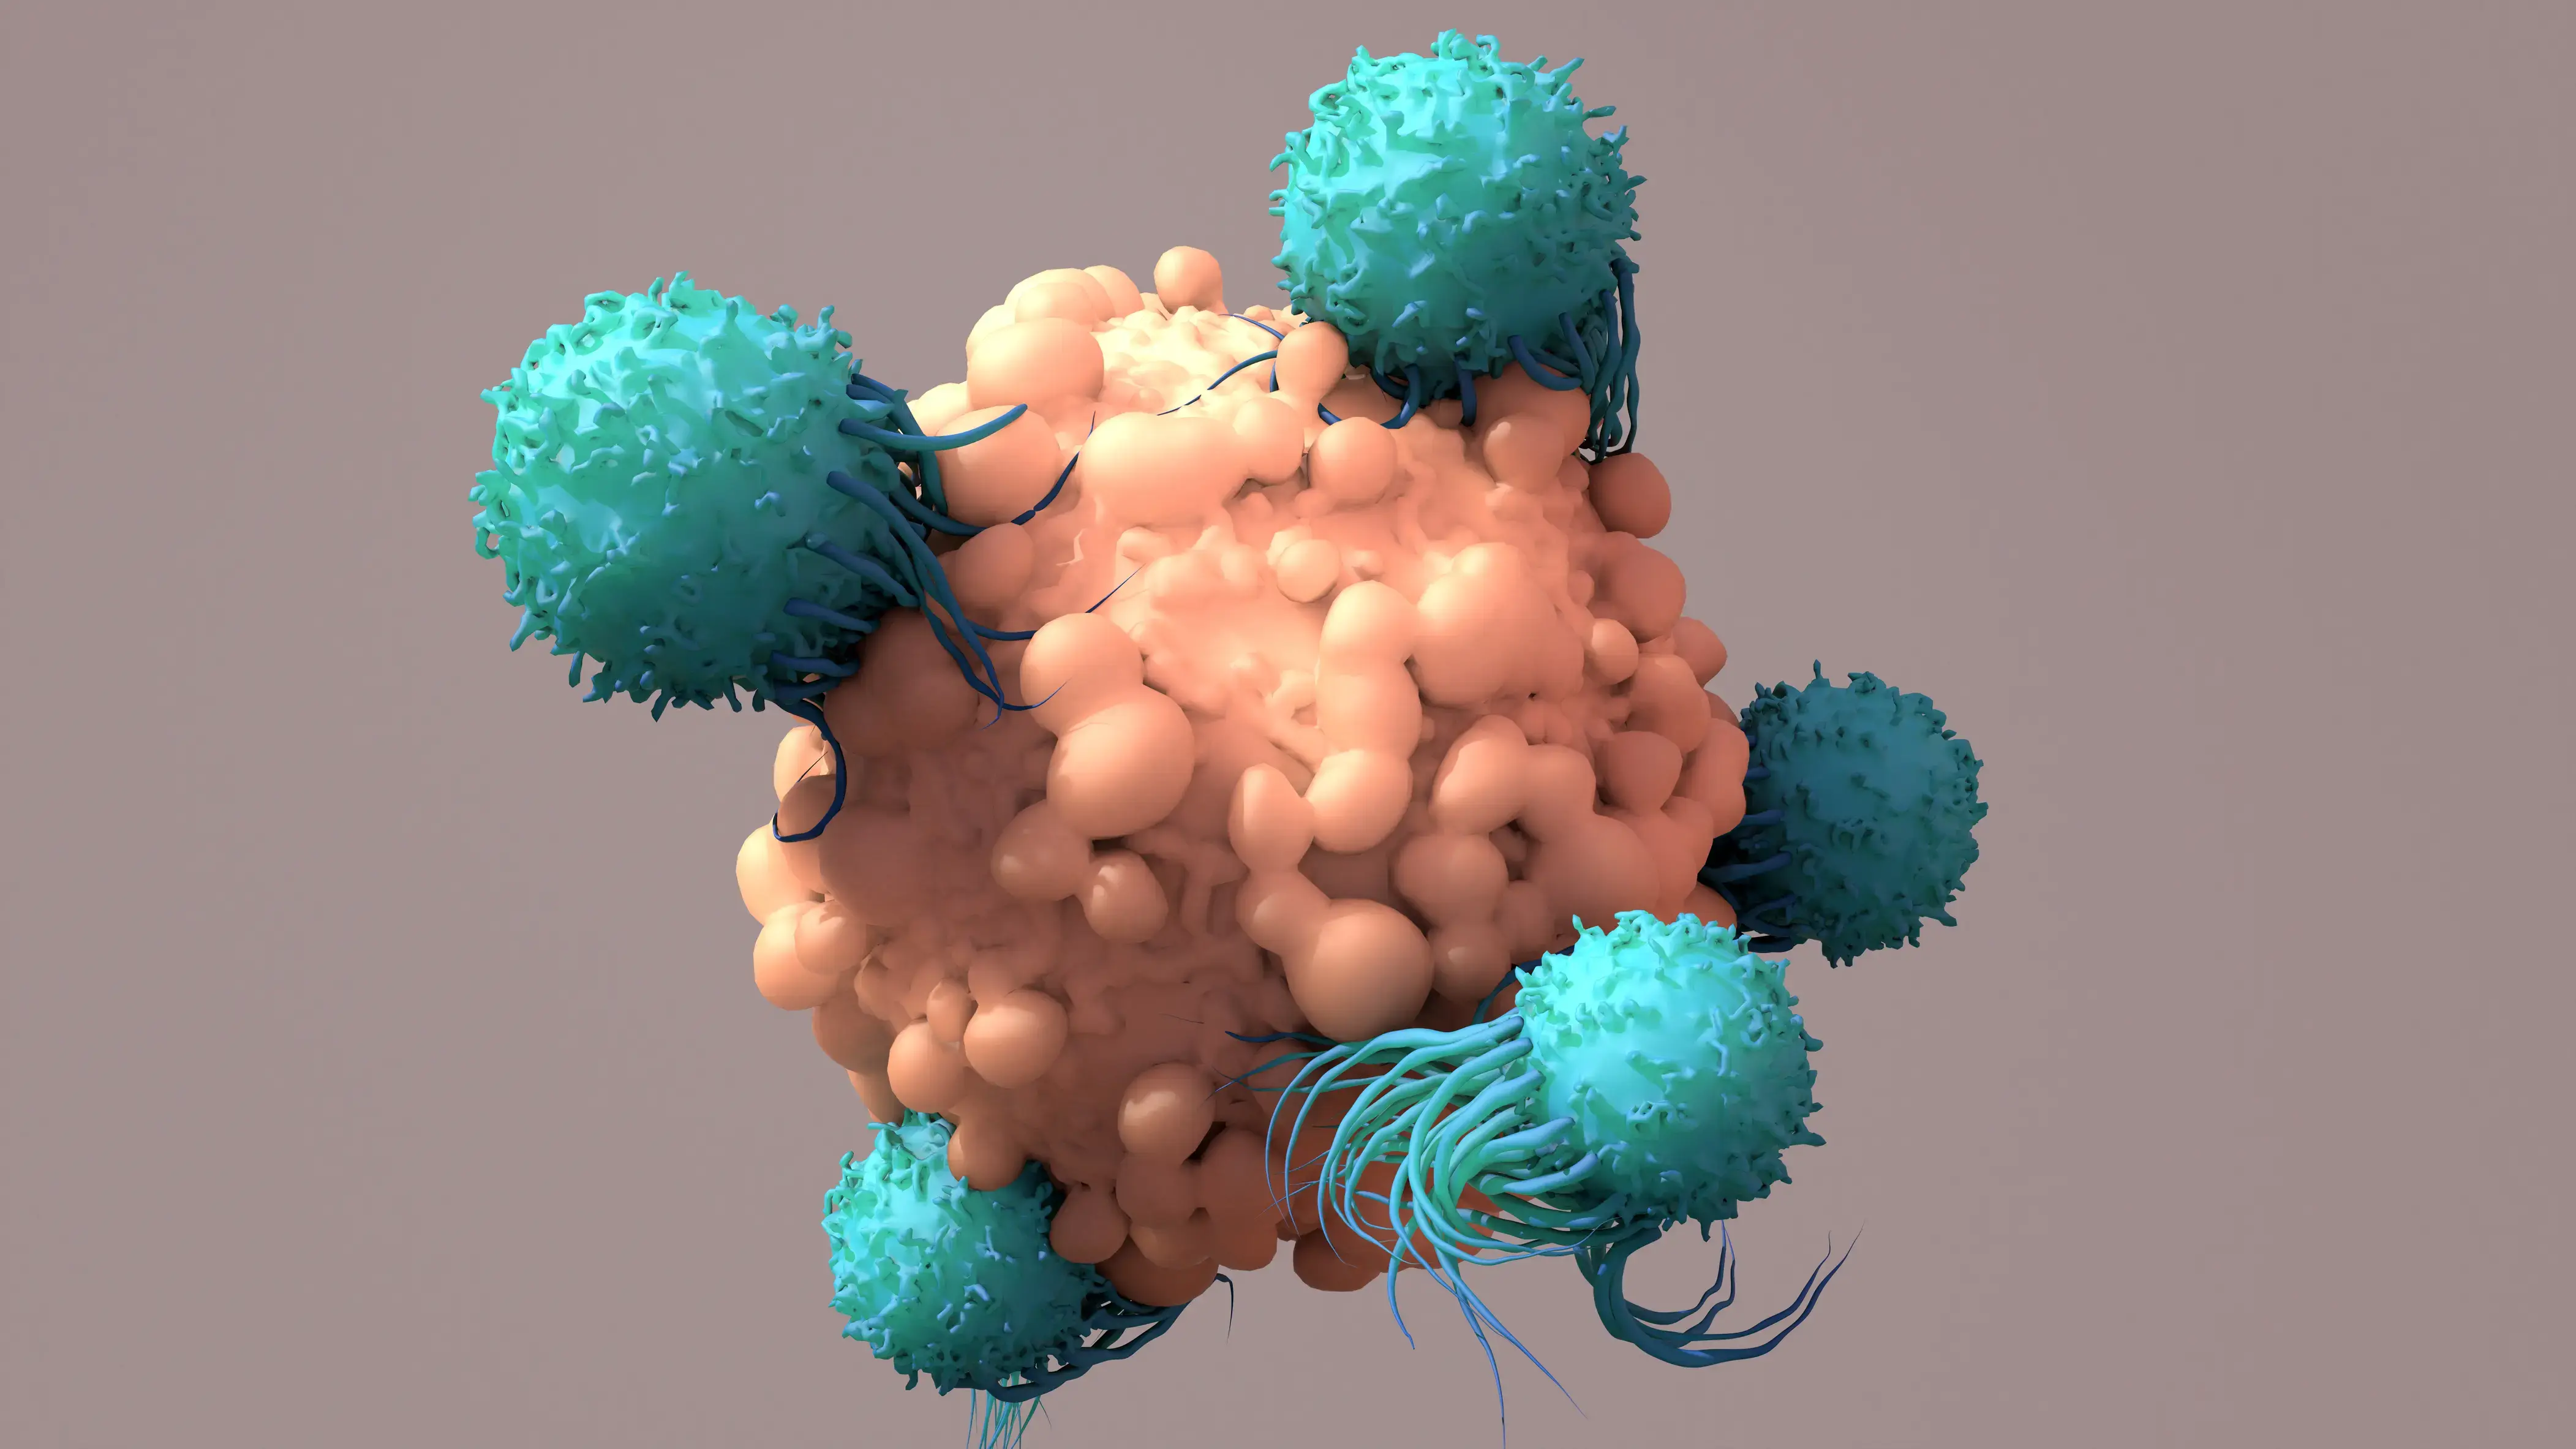 Immune cells attacking 3D tumor model cells.